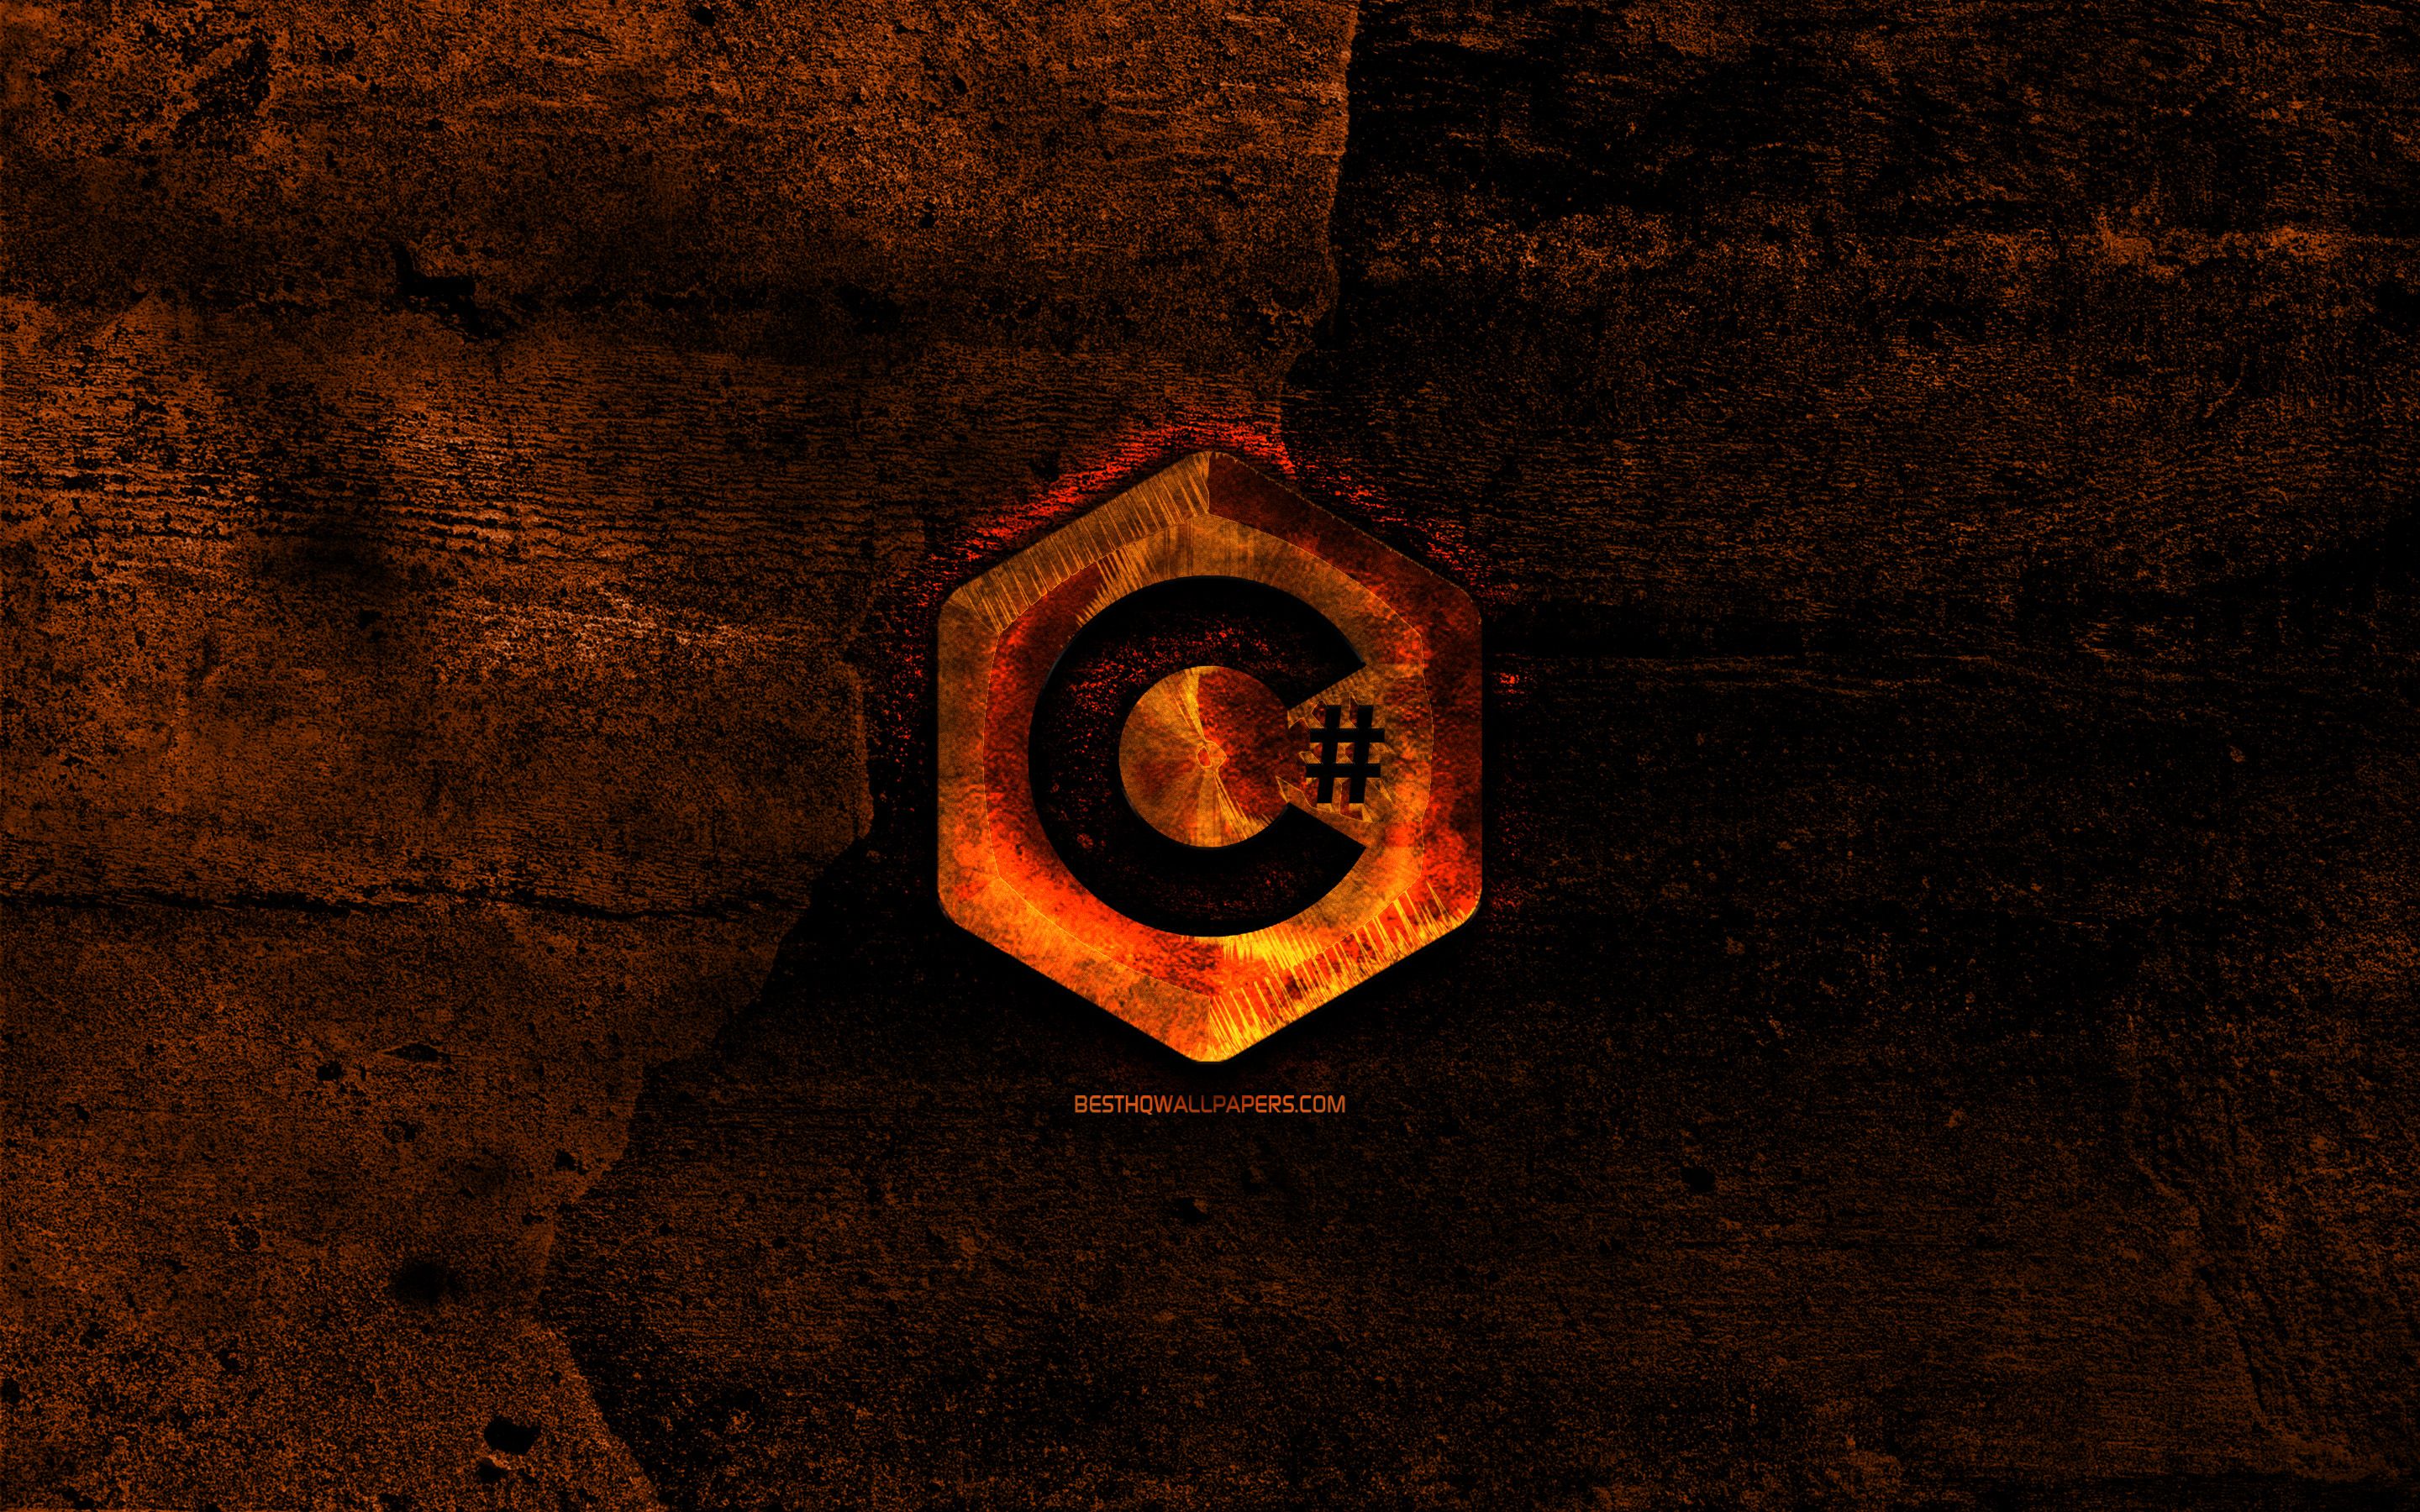 Download wallpaper C Sharp fiery logo .besthqwallpaper.com